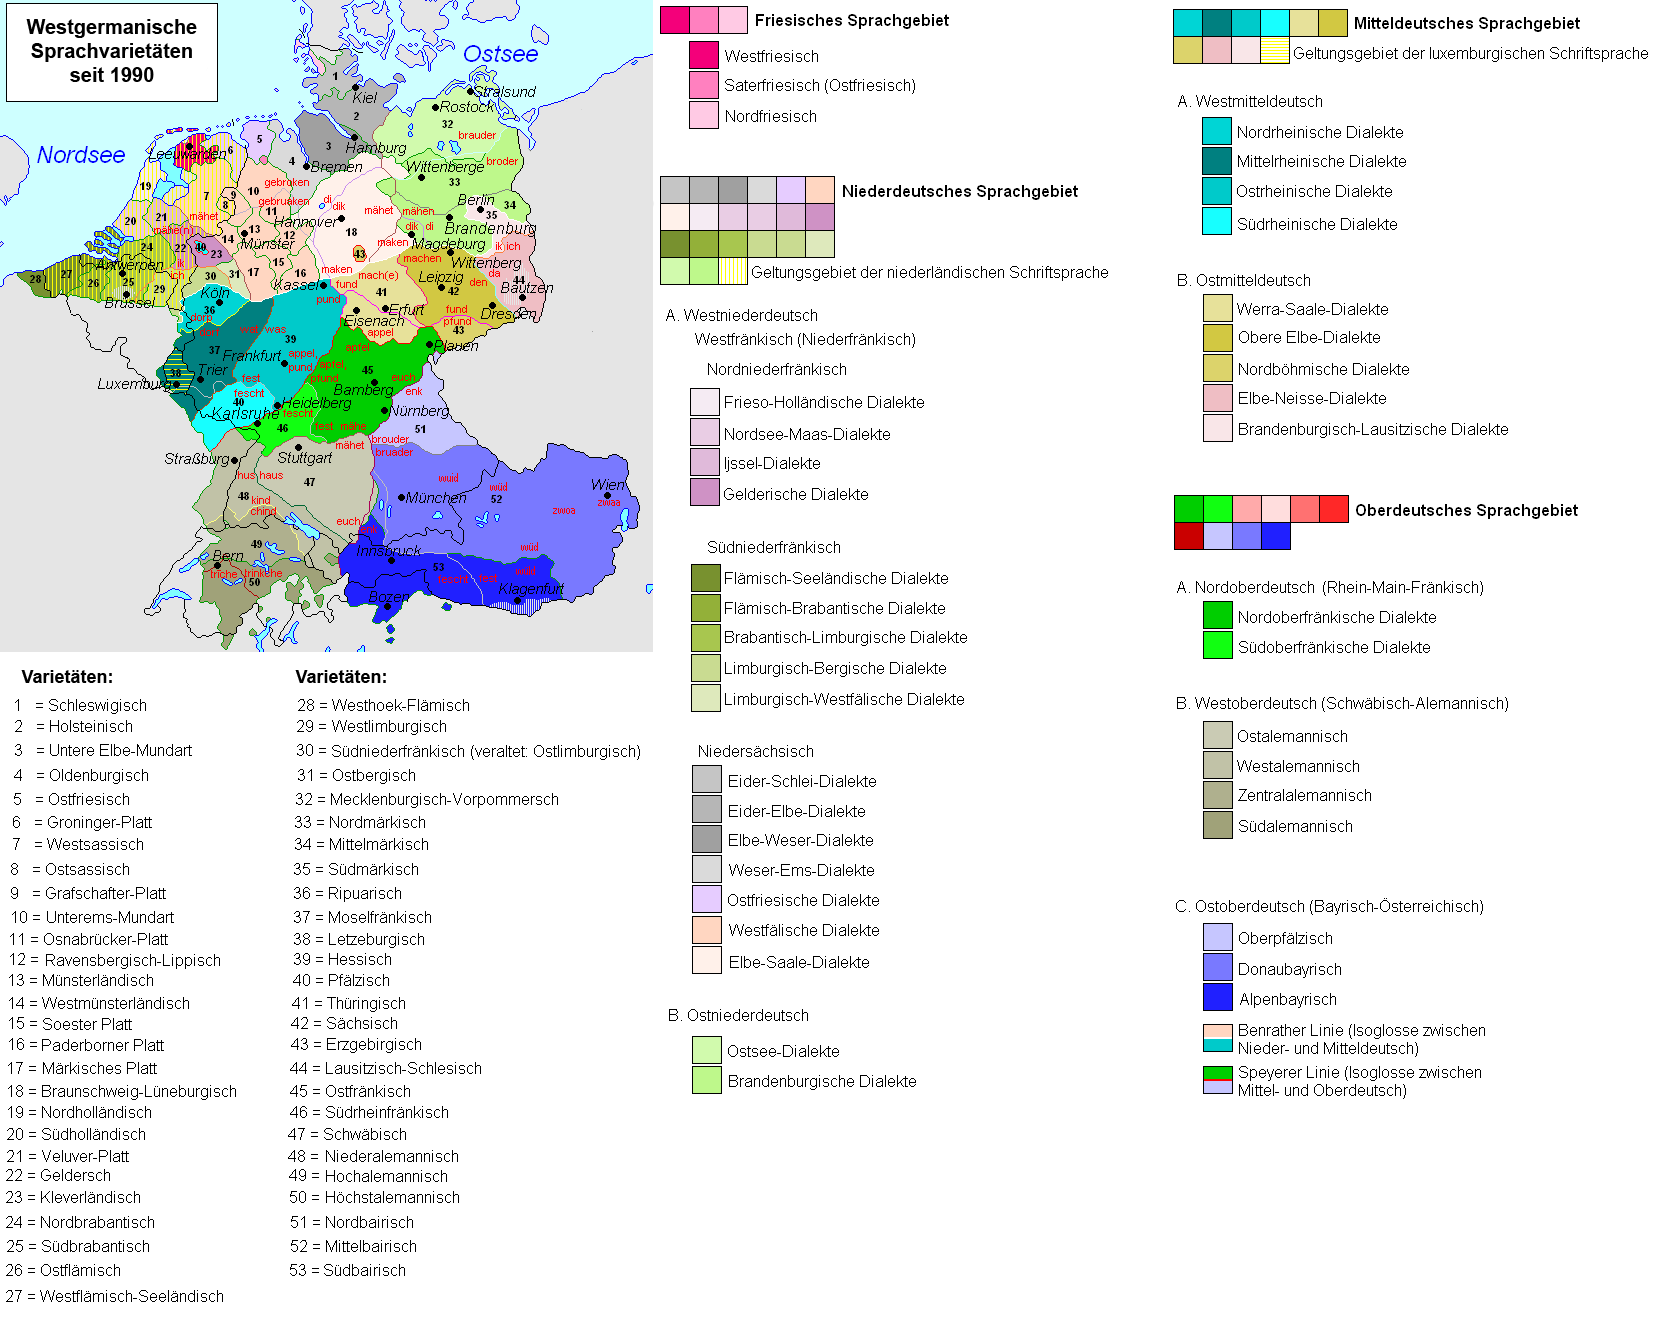 Wie viele Dialekte gibt es in Sachsen?